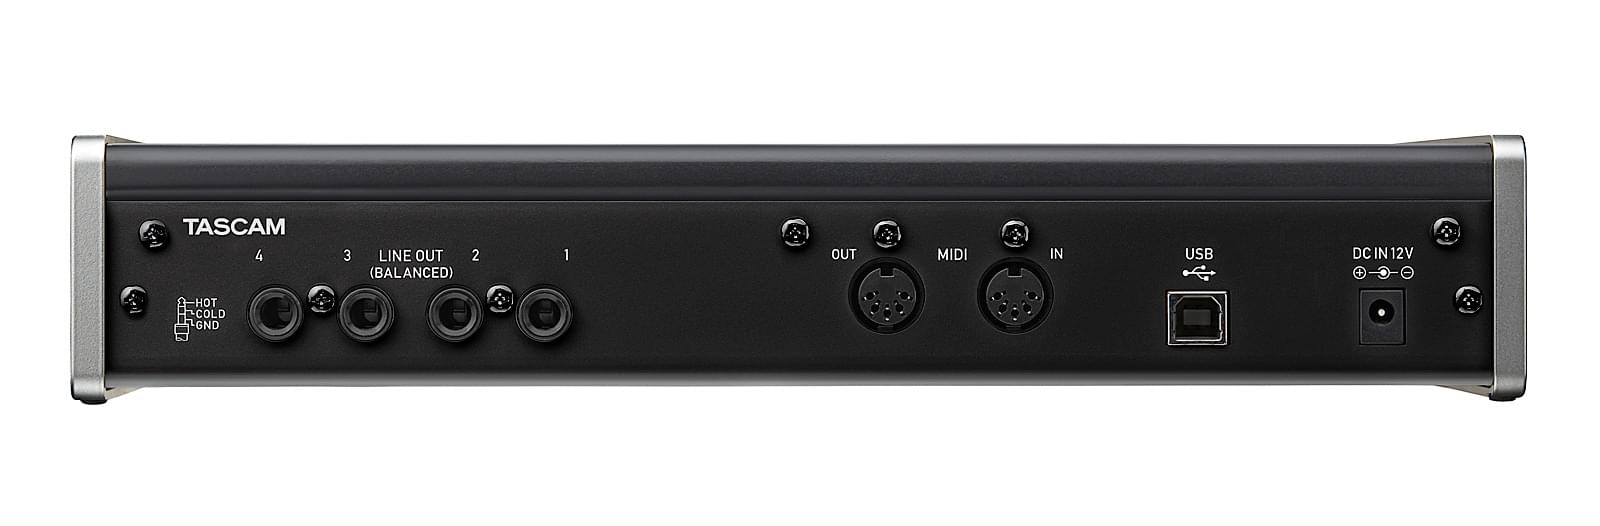 Tascam Us 4x4 Usb Audio Midi Interfejs 4 In 4 Out